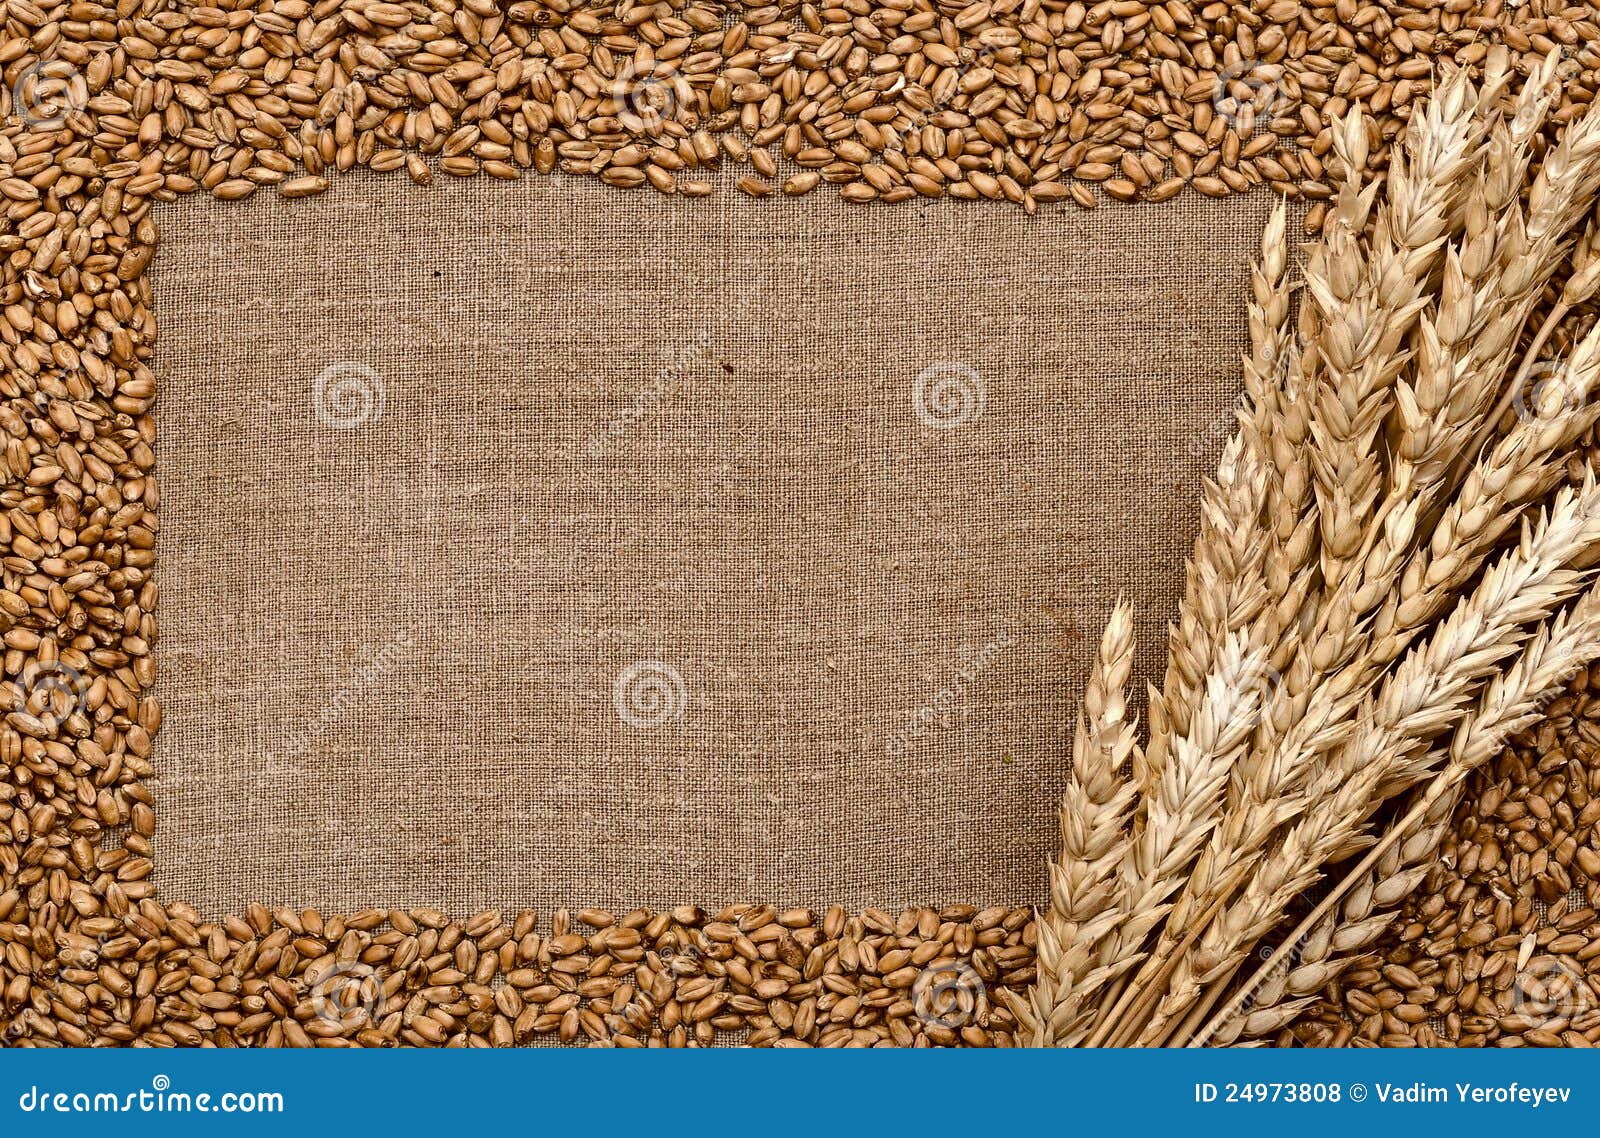 耳朵麦子. 耳朵物质粗砺的大袋麦子